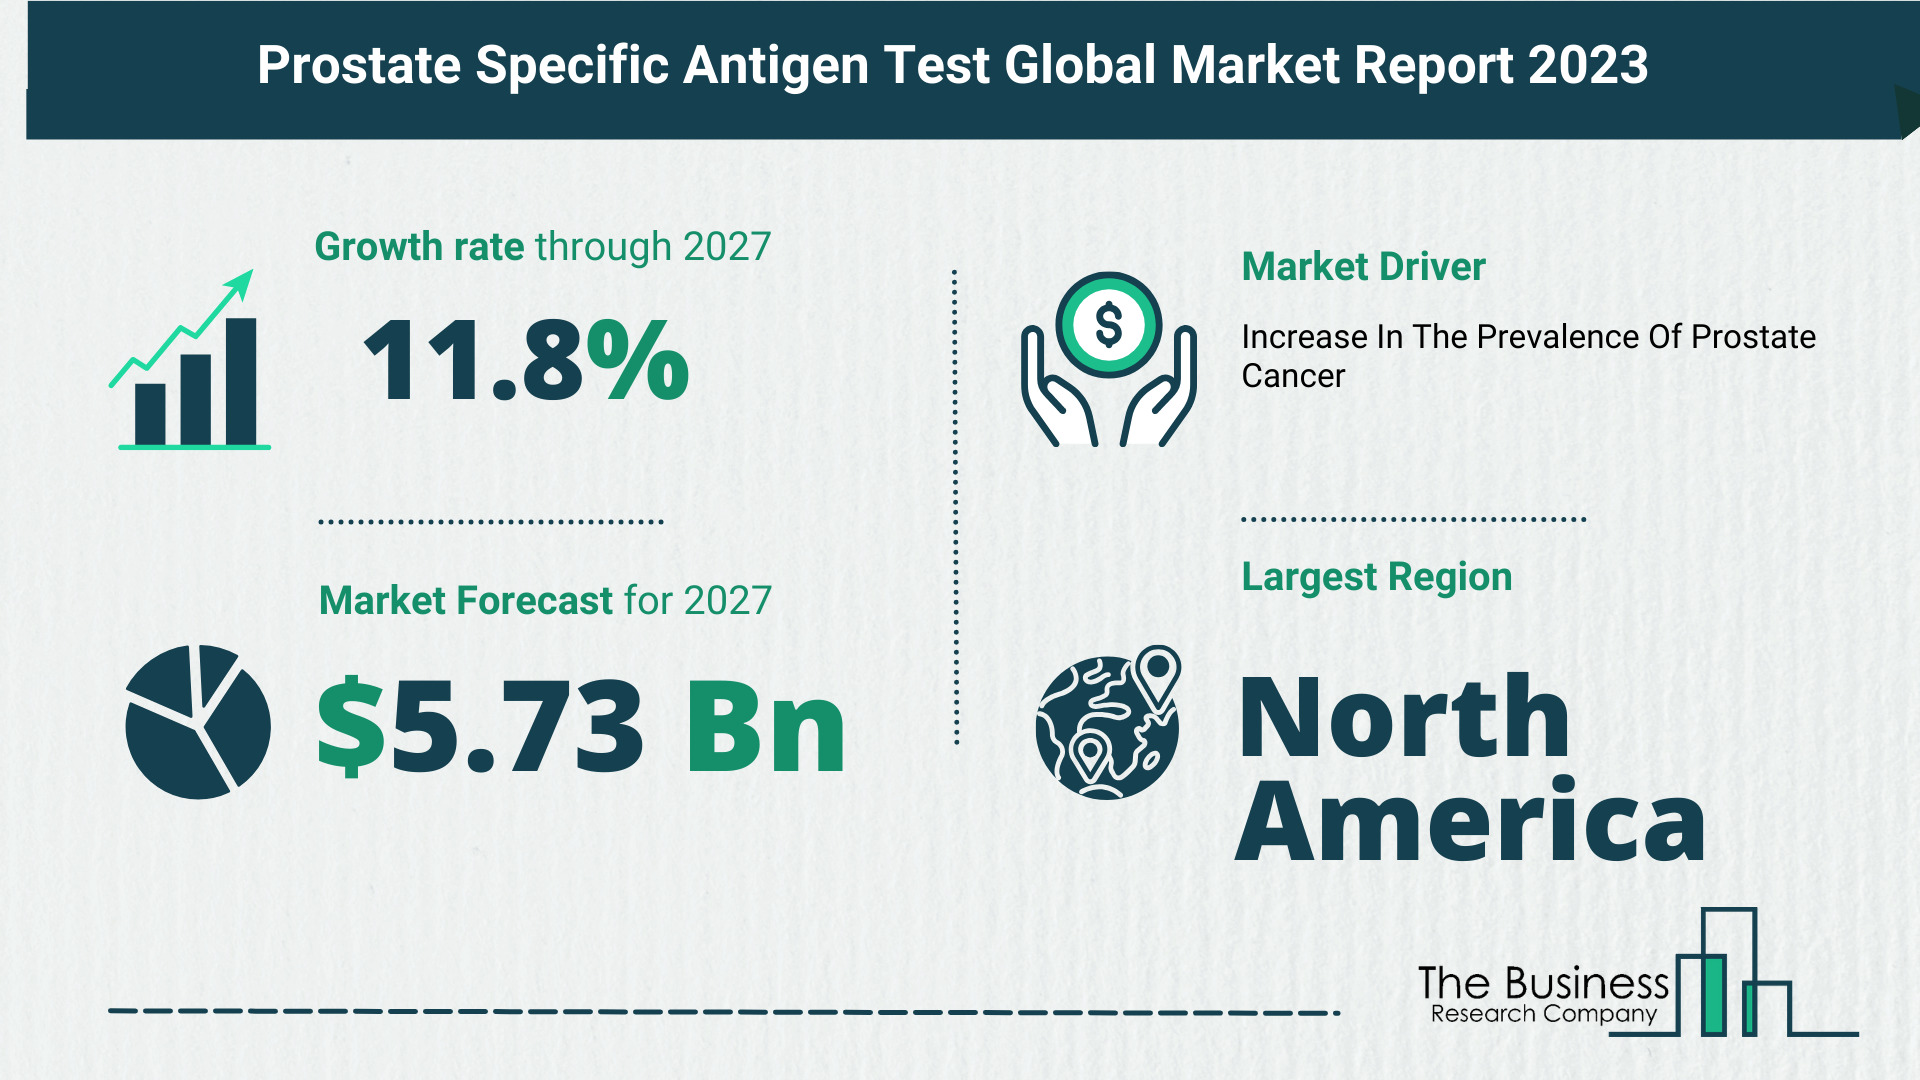 Global Prostate Specific Antigen (PSA) Test Market